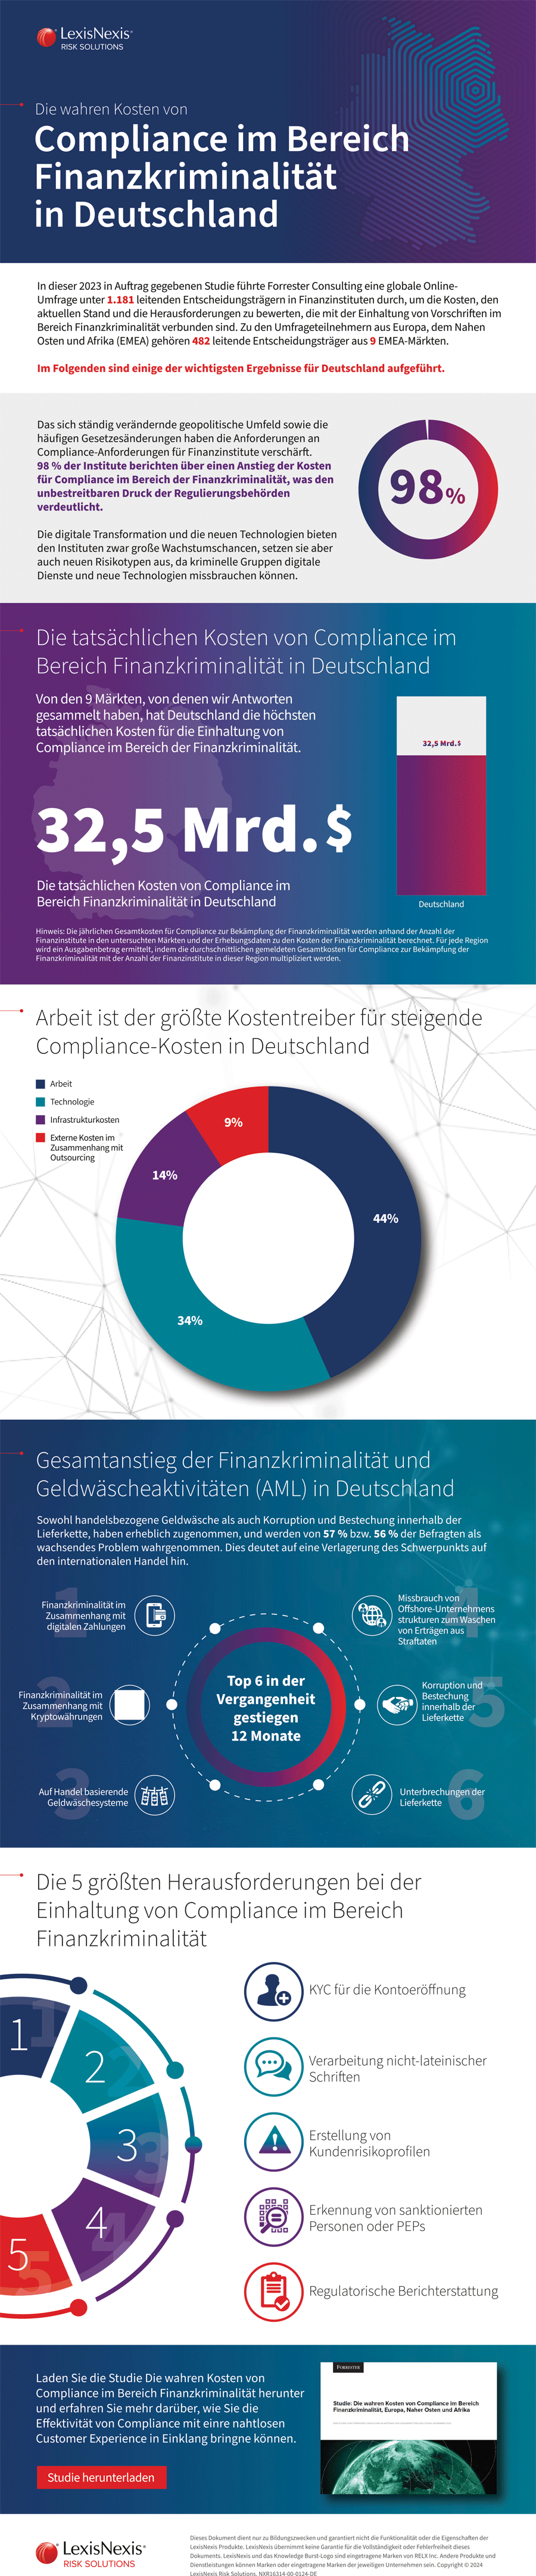 Infografik: Compliance-Kosten im Bereich Finanzkriminalität in Deutschland